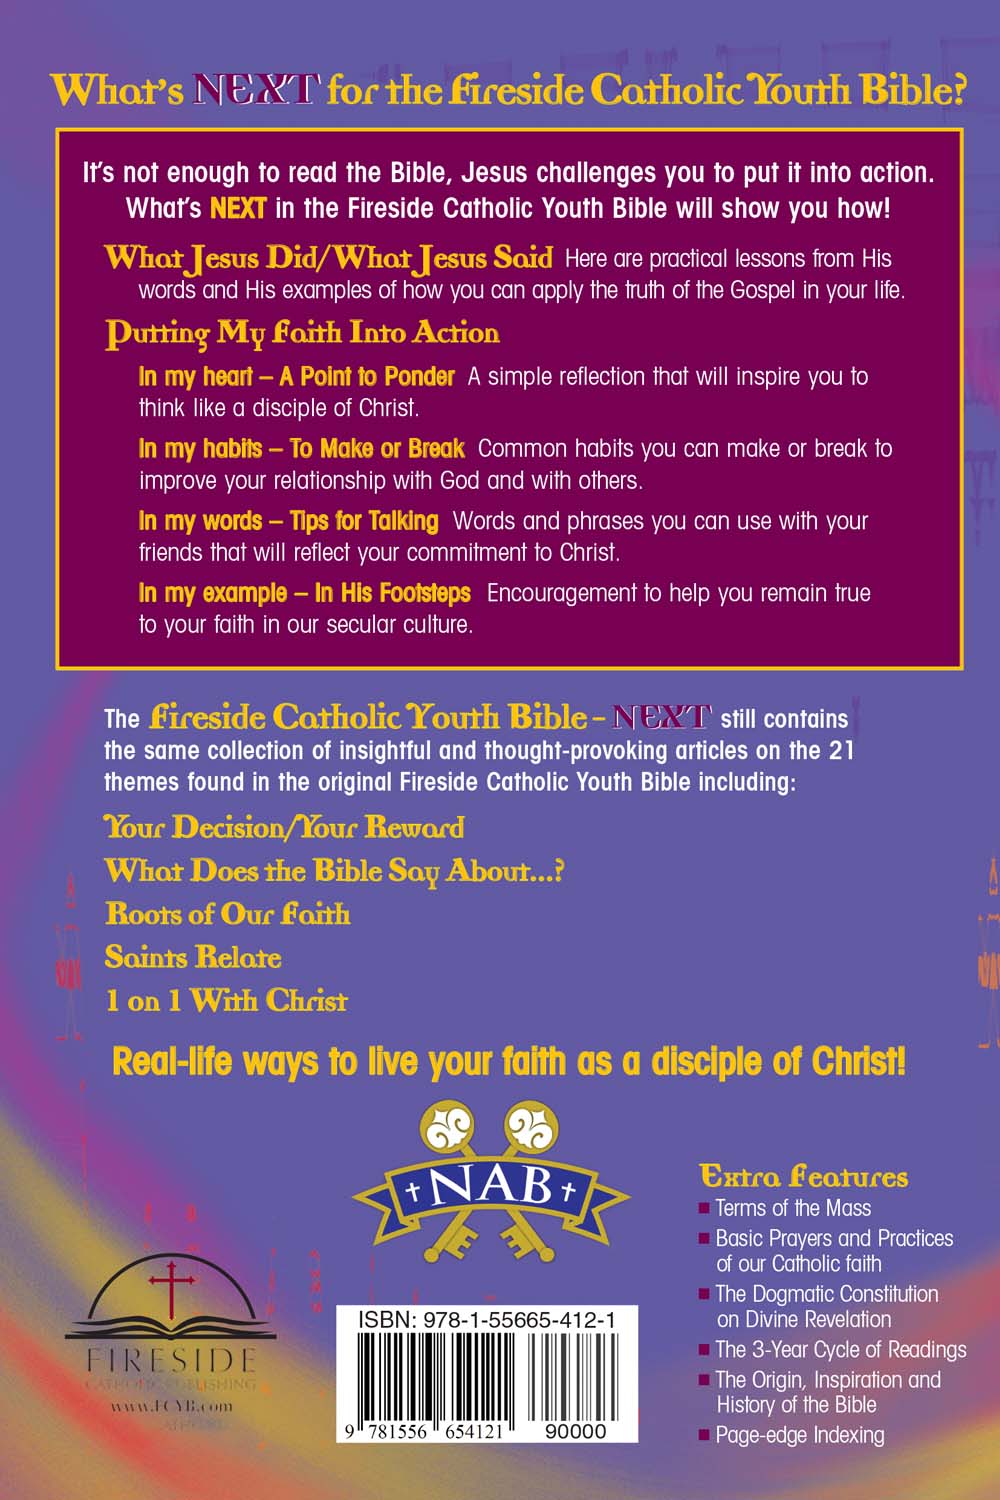 Fireside Catholic Publishing Fireside Catholic Youth Bible - NEXT! Holy Bible